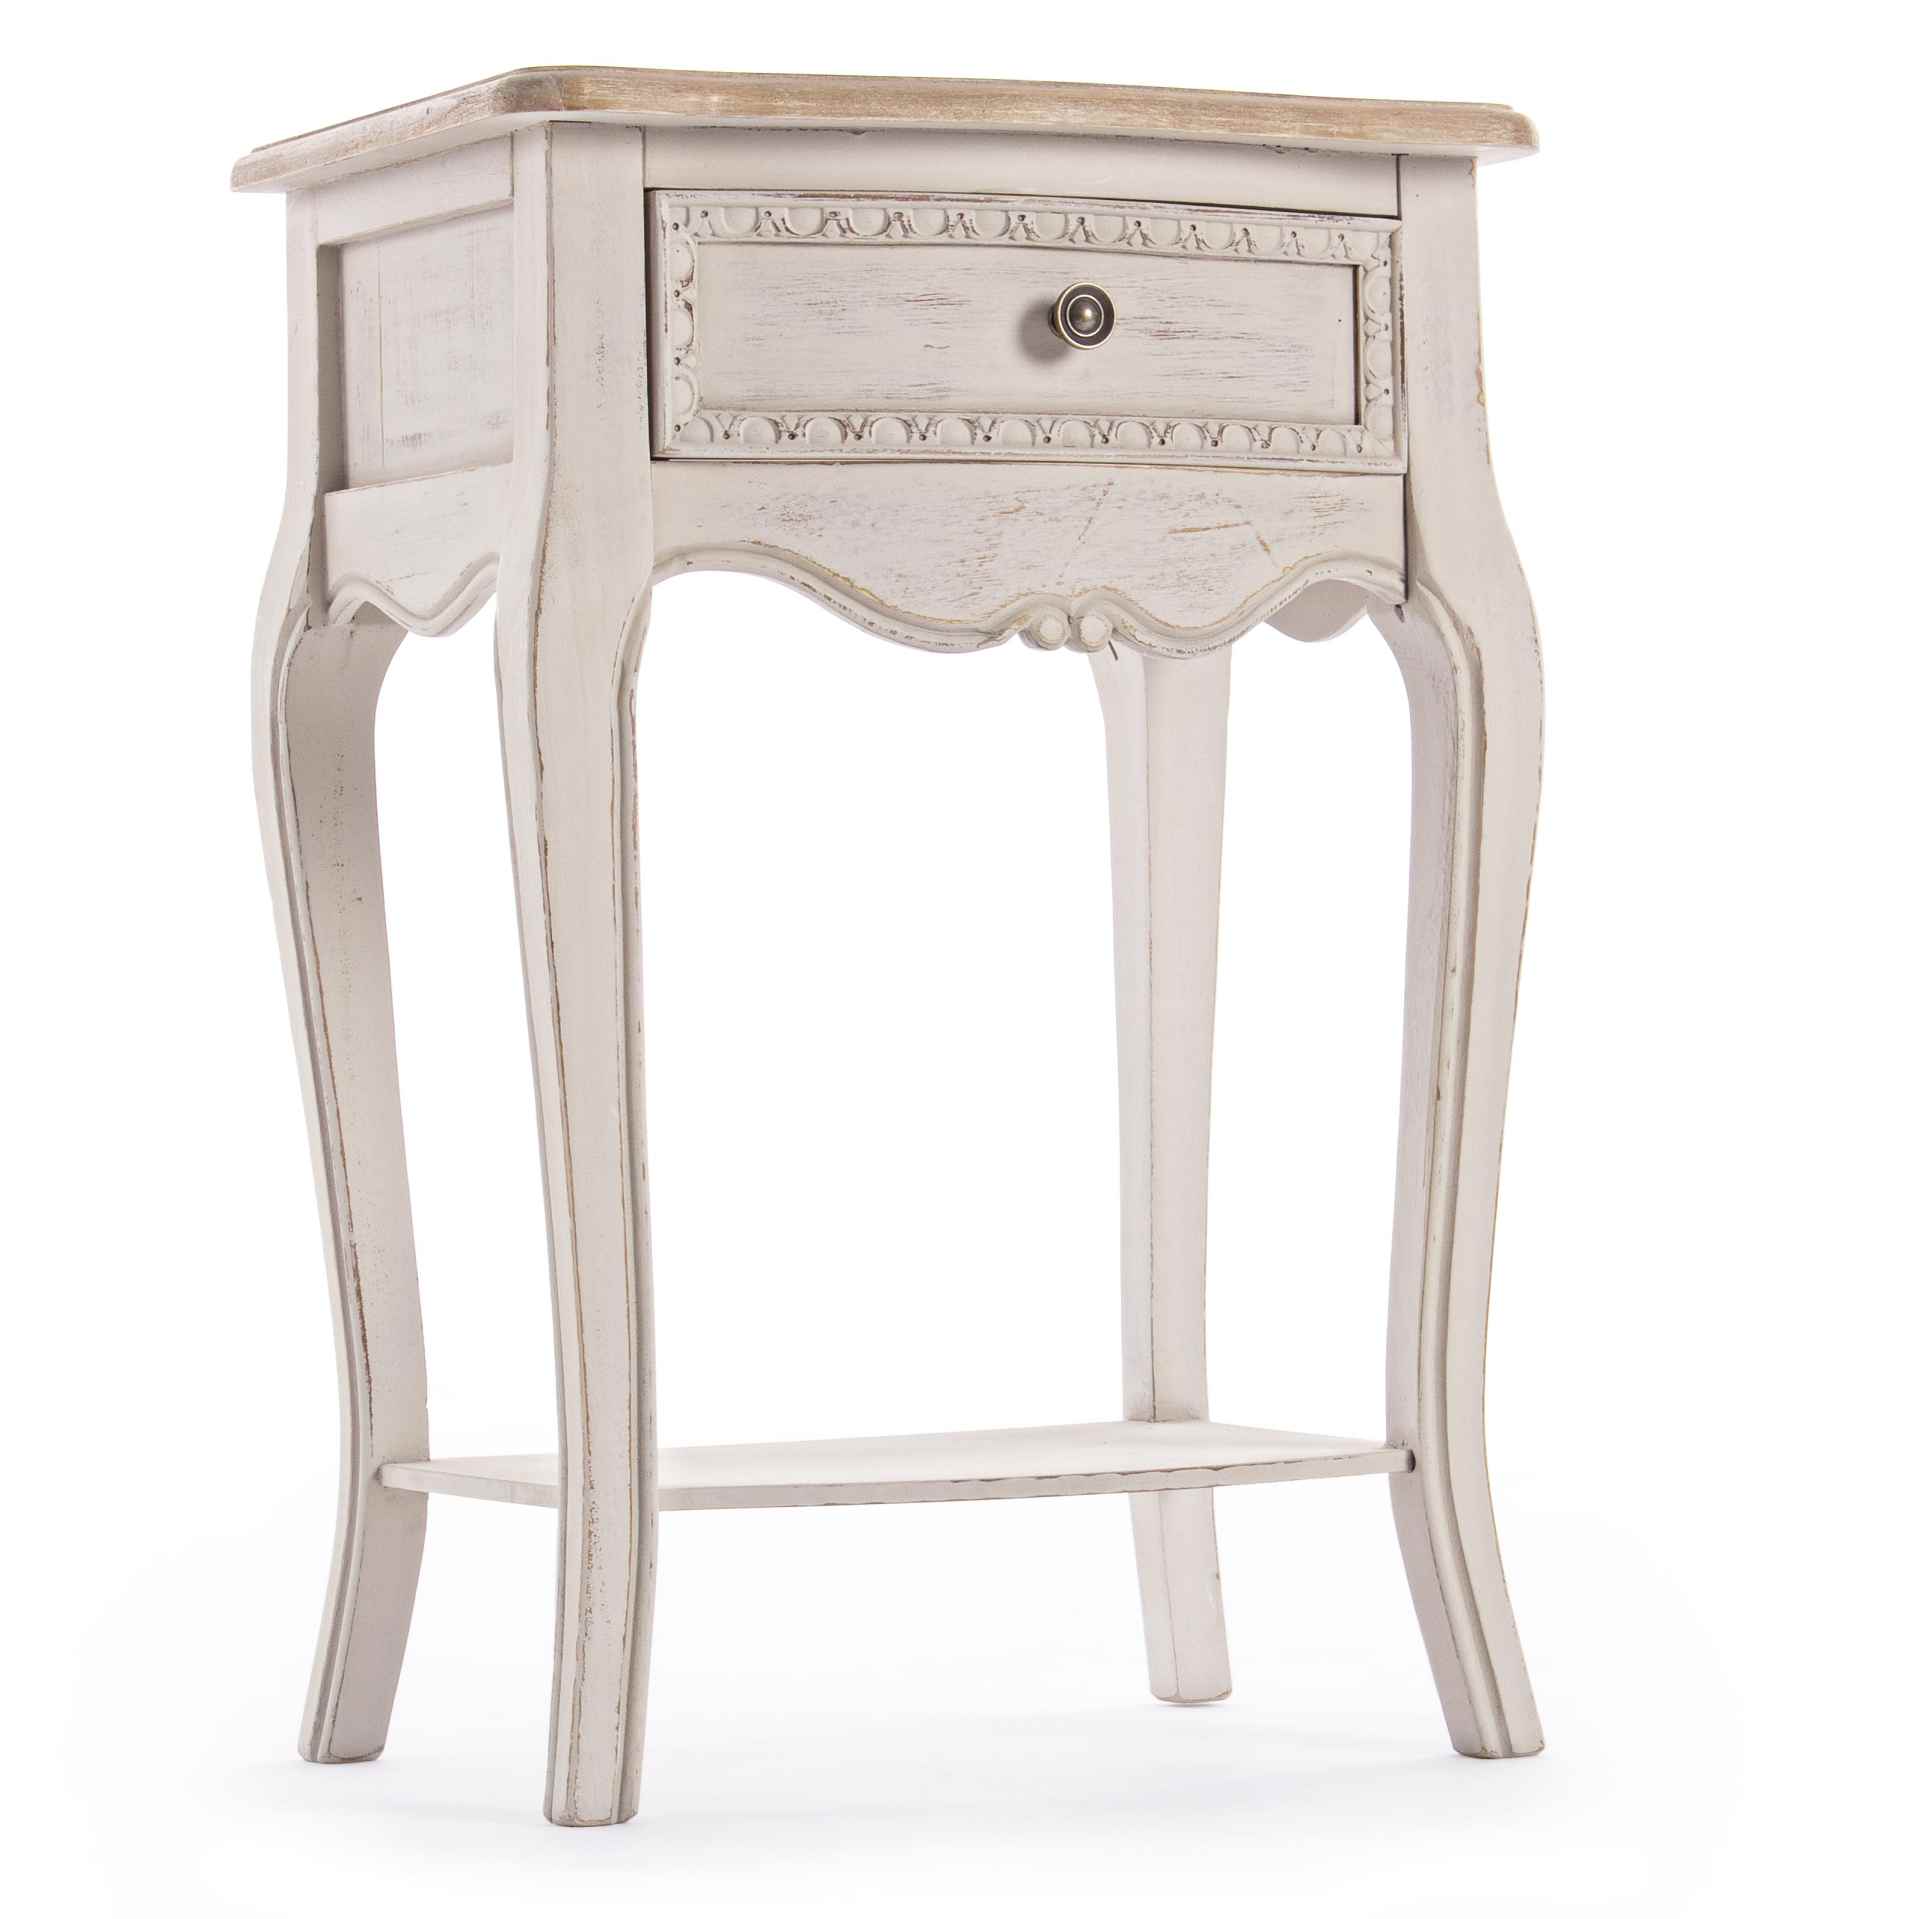 Der Nachttisch Clarissa überzeugt mit seinem klassischen Design. Gefertigt wurde er aus Paulowniaholz, welches einen grauen Farbton besitzt. Das Gestell ist auch aus Paulowniaholz. Der Nachttisch verfügt über eine Schublade. Die Breite beträgt 48 cm.